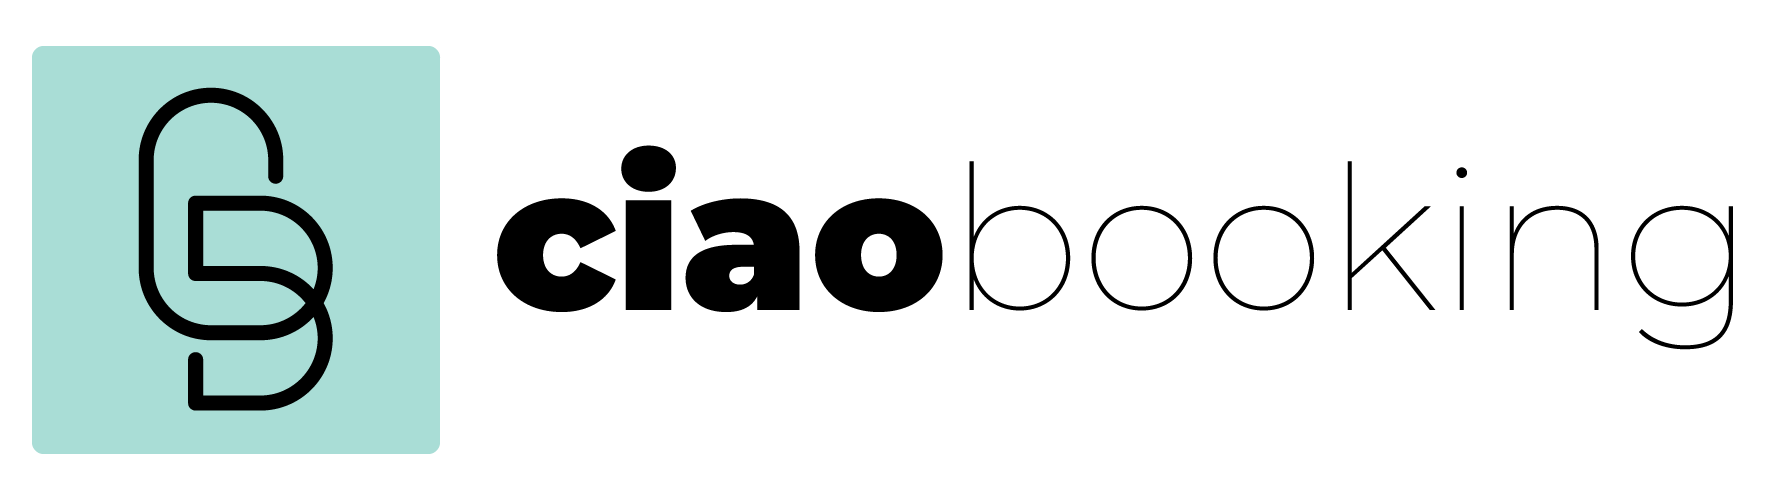 Logo-completo_Black.png